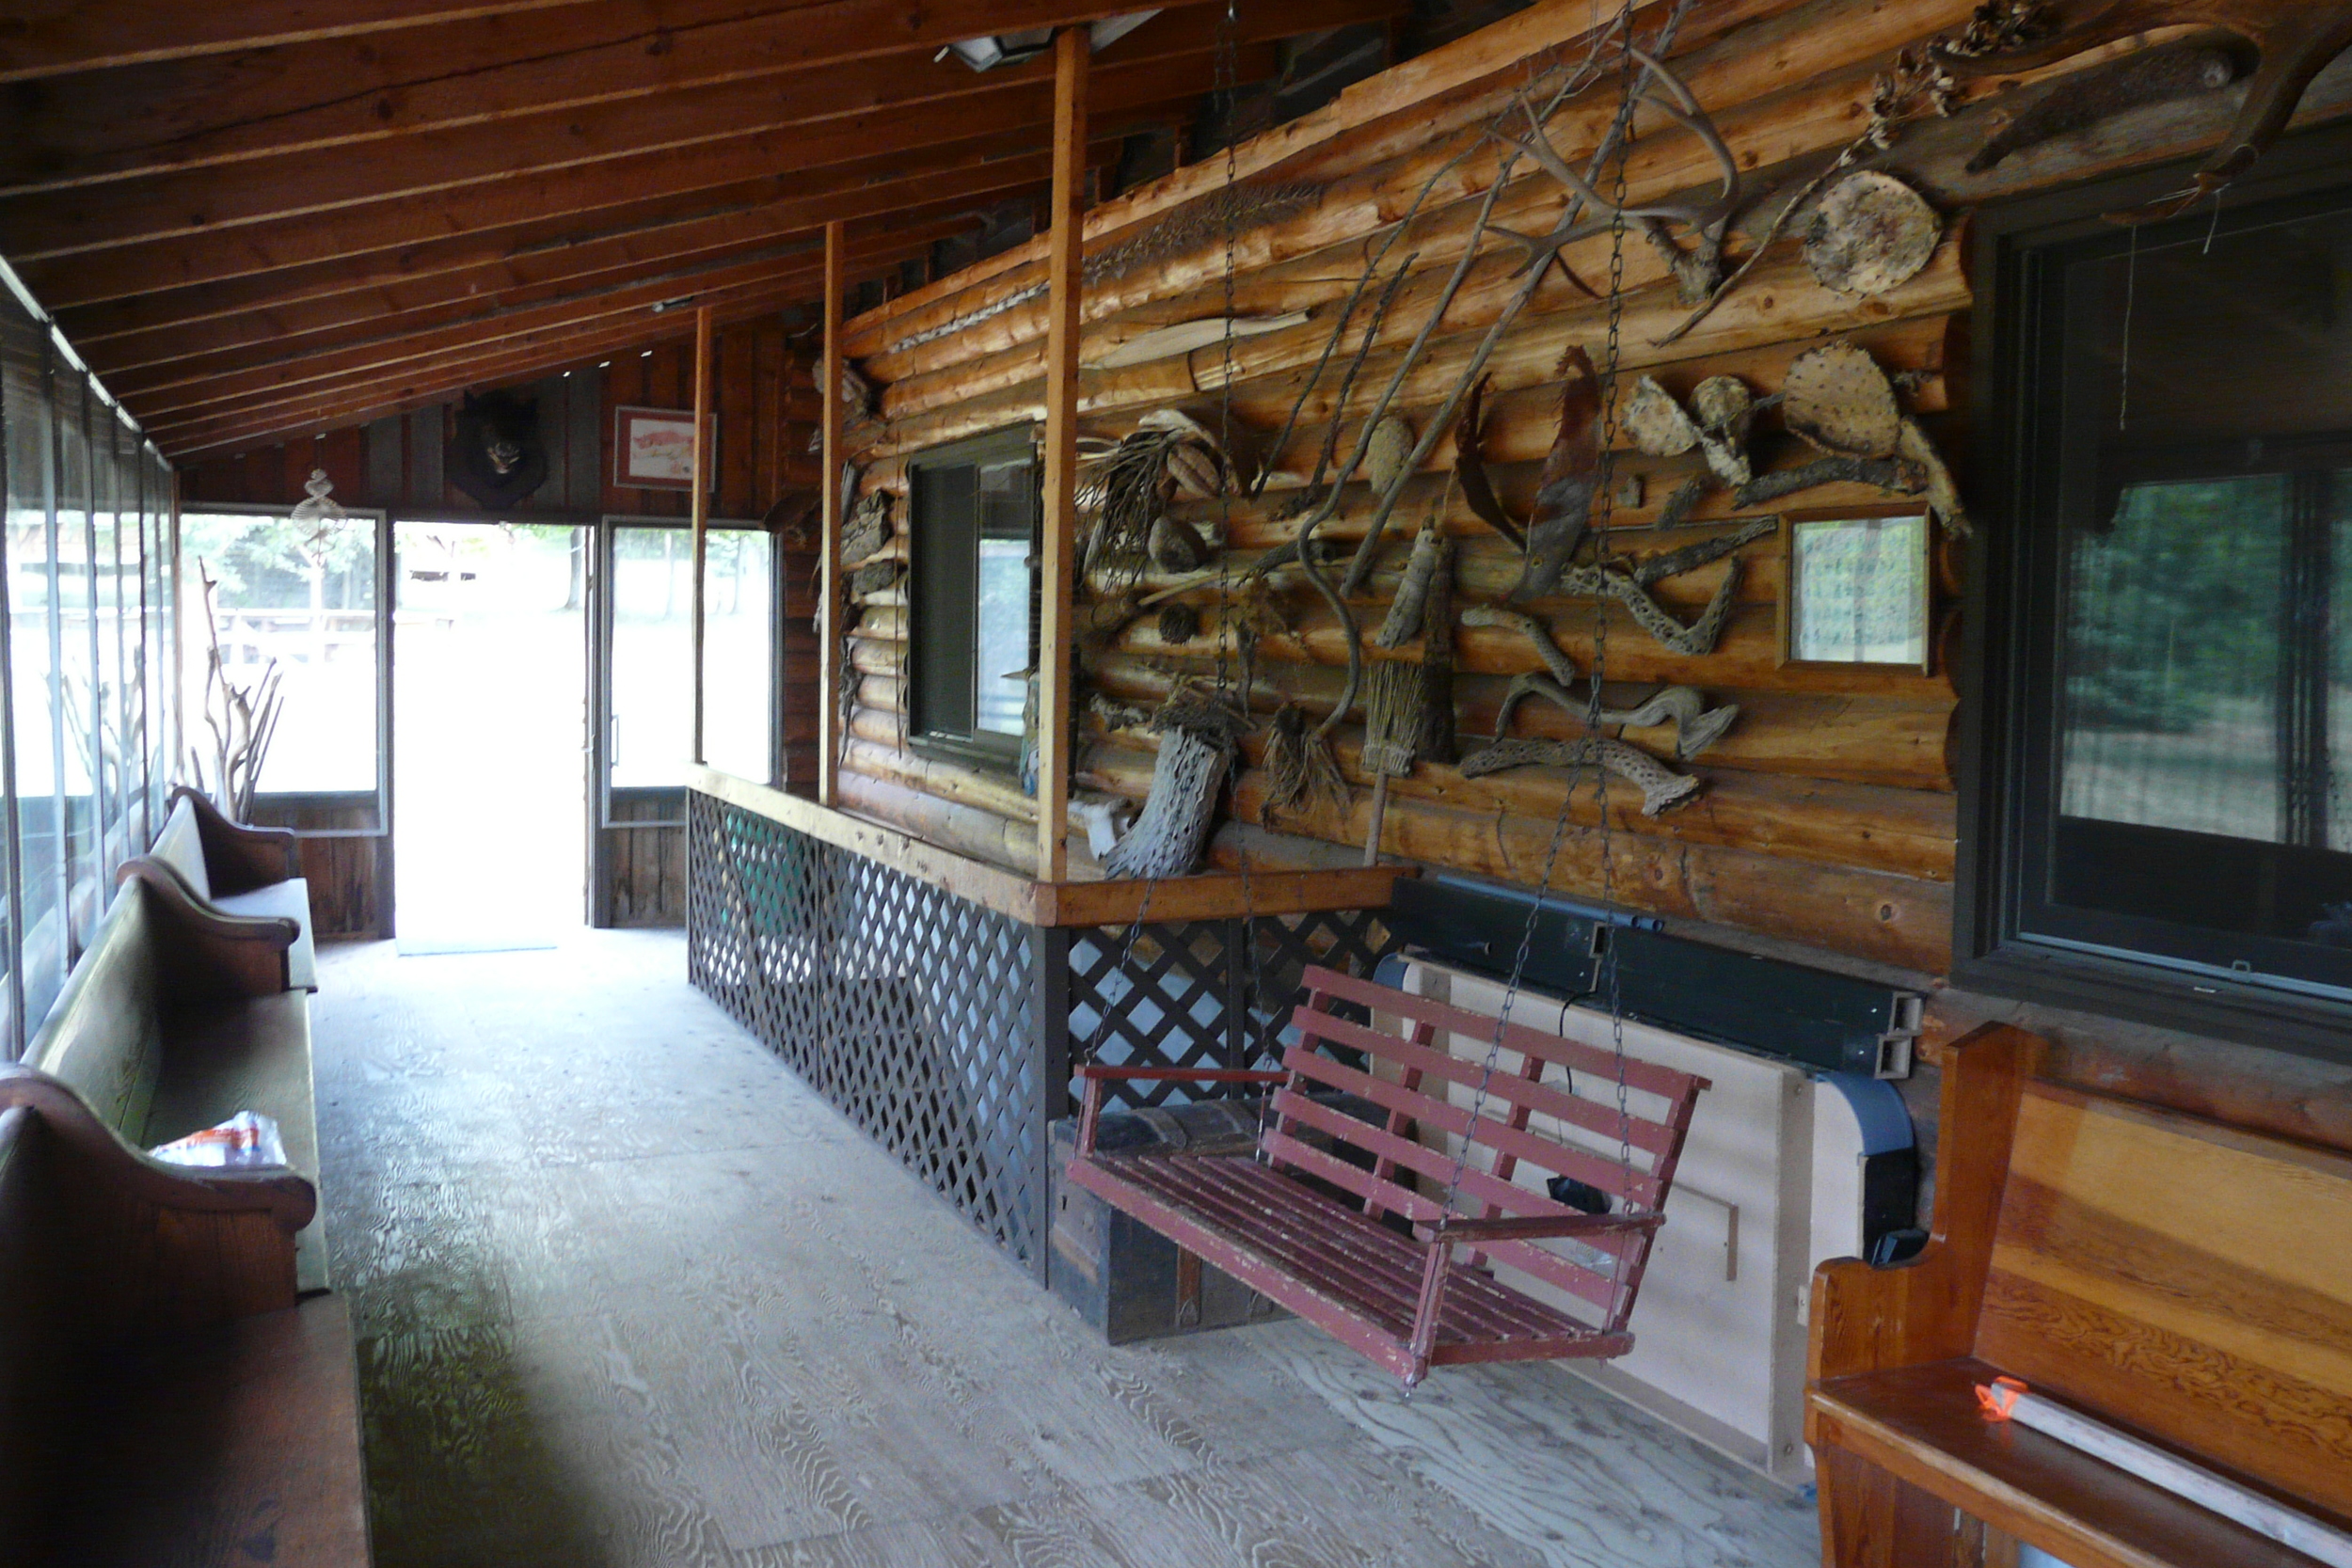 The Lodge Porch